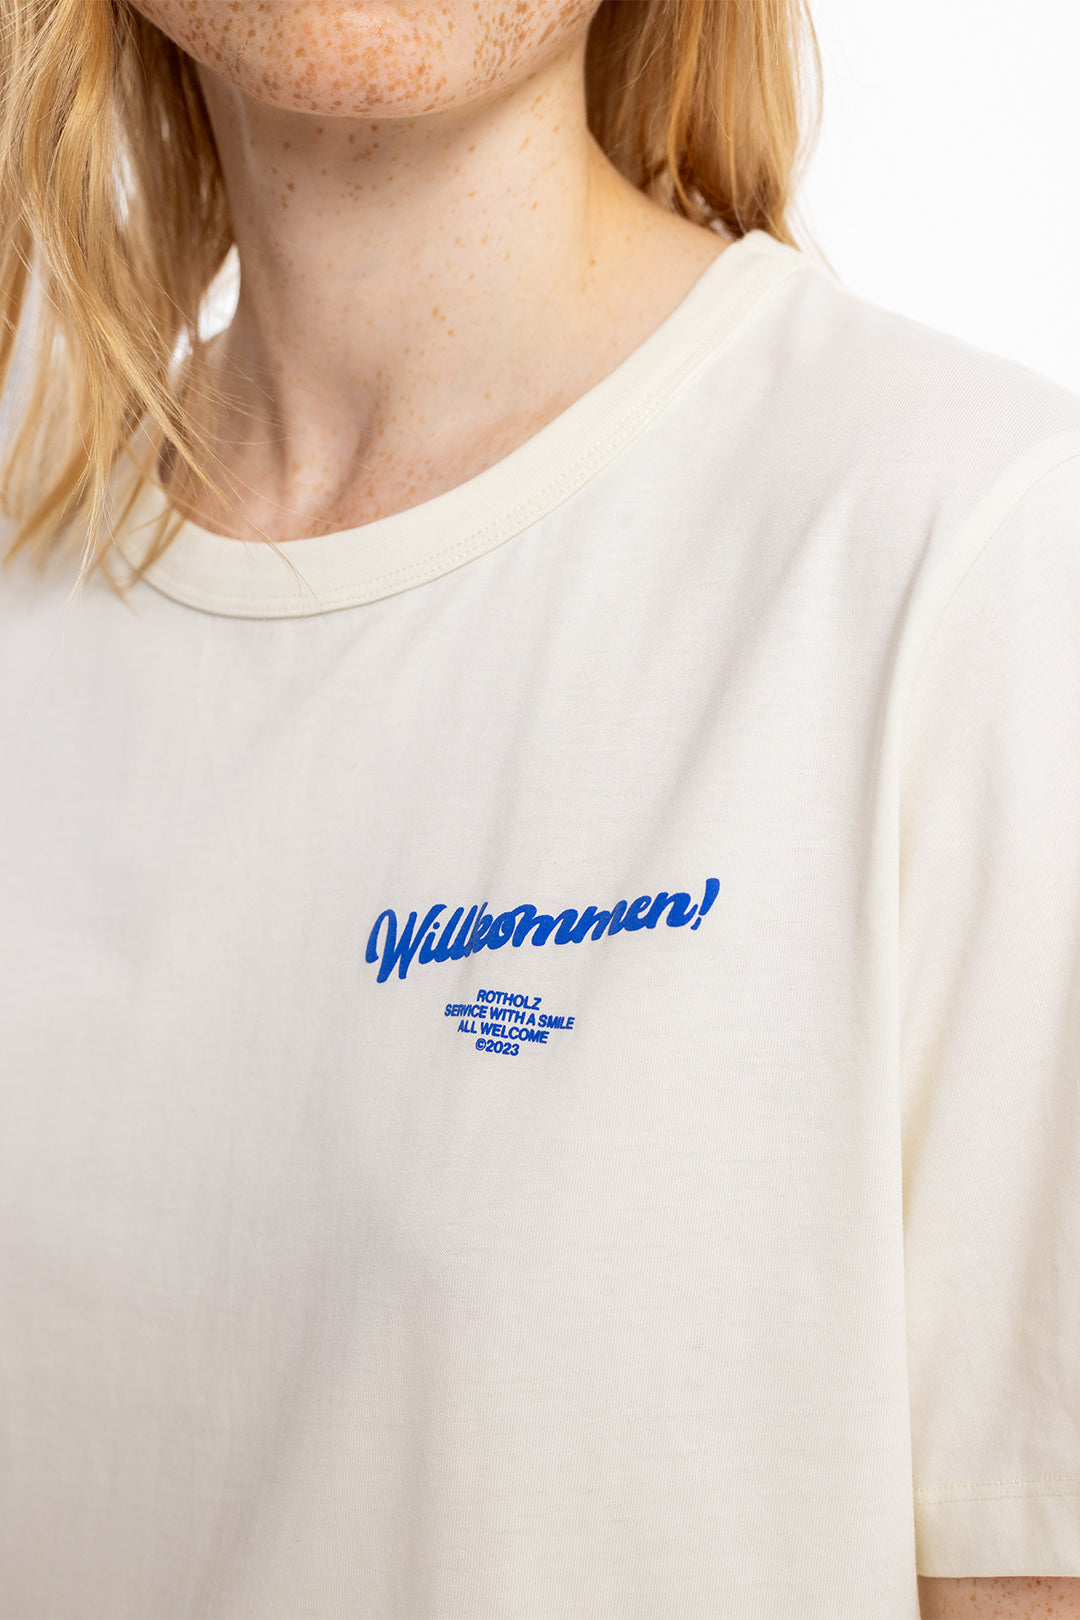 Weisses T-Shirt Willkommen Print aus 100% Bio Baumwolle von Rotholz